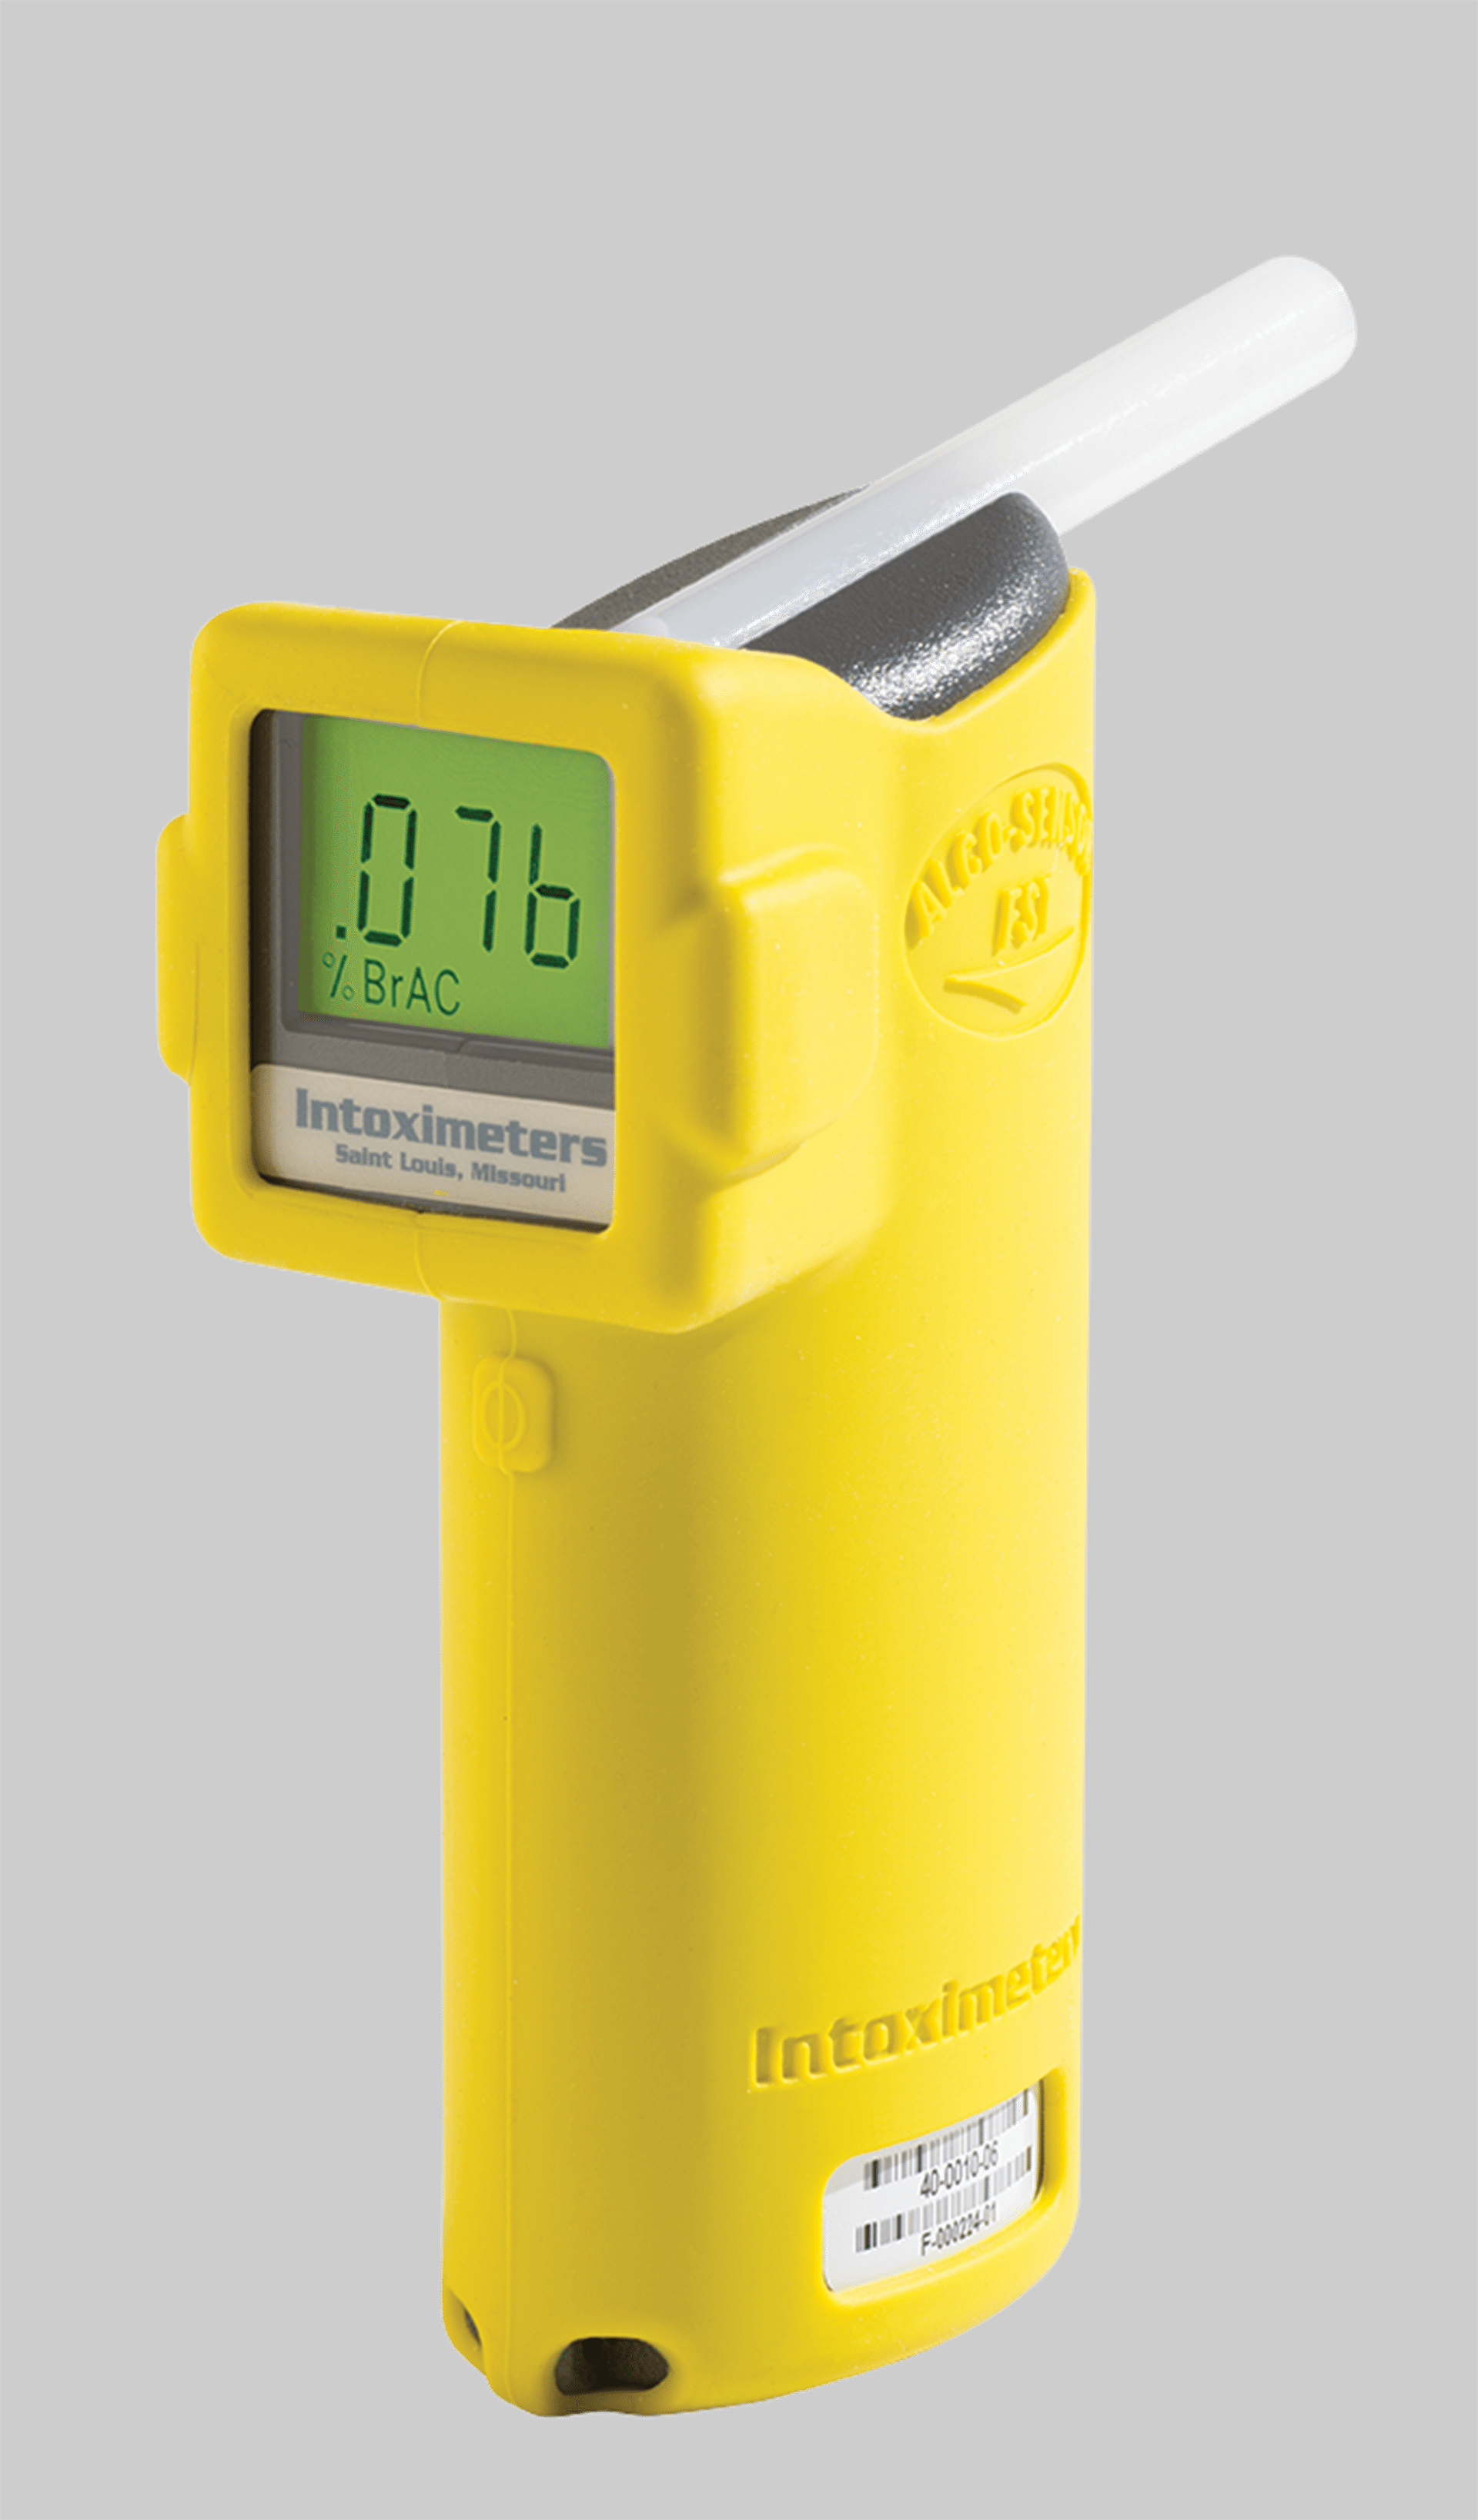 Alco-Sensor FST Breath Alcohol Tester